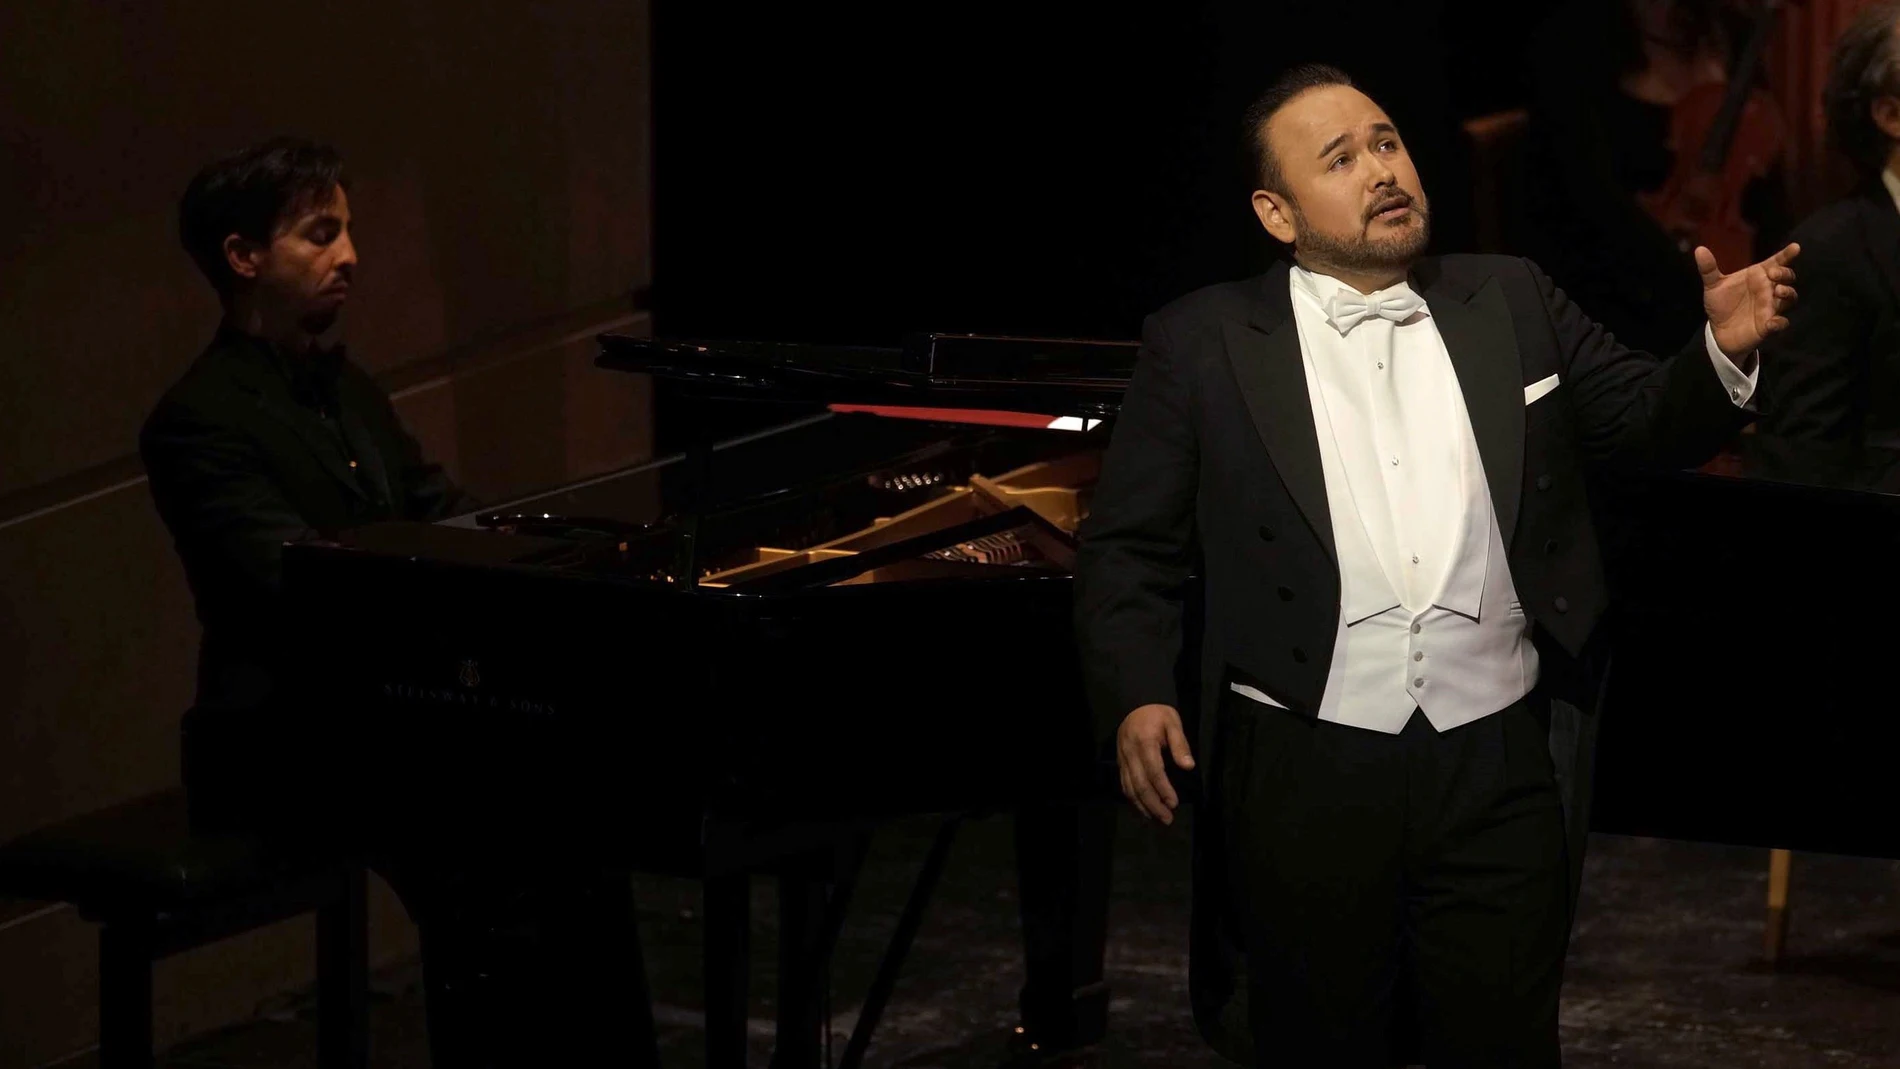 El tenor mexicano Javier Camarena y el pianista cubano Ángel Rodríguez durante el concierto en el Teatro Real de Madrid